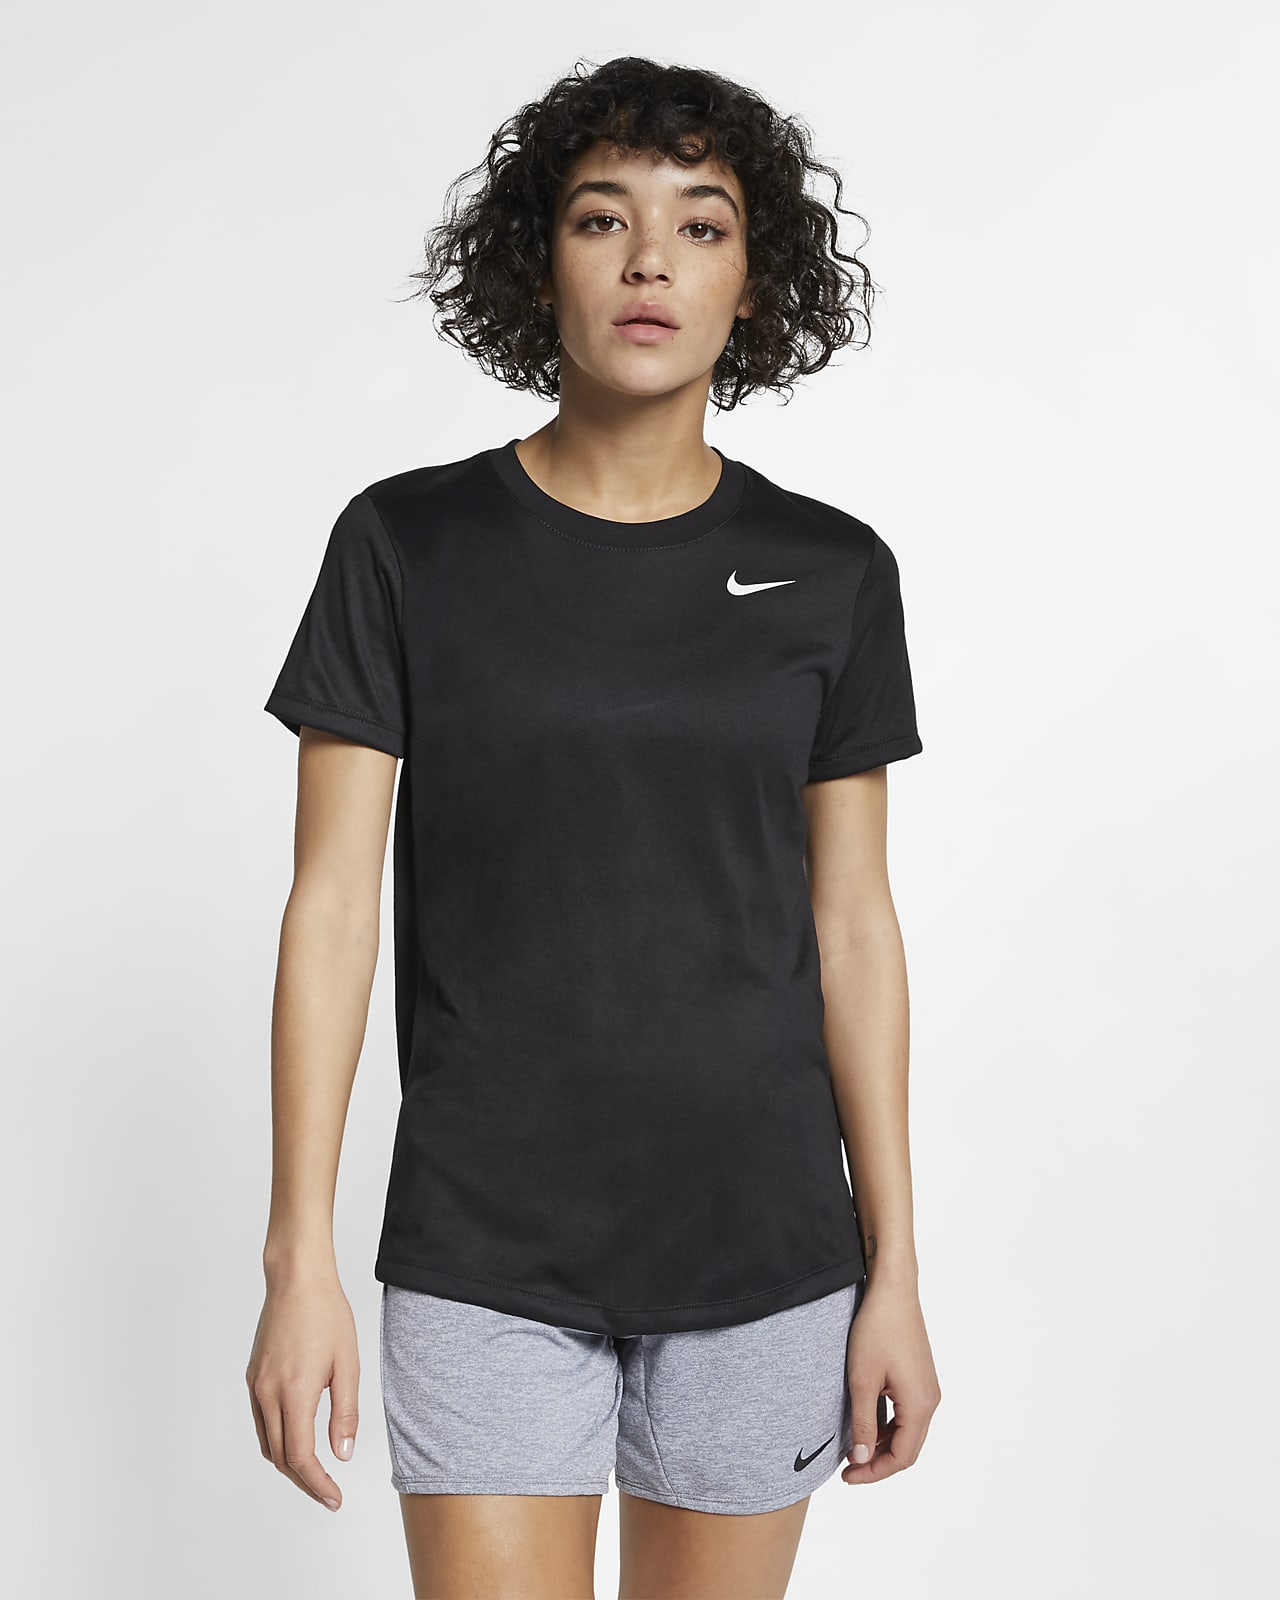 Nike Legend Women's Training T-Shirt